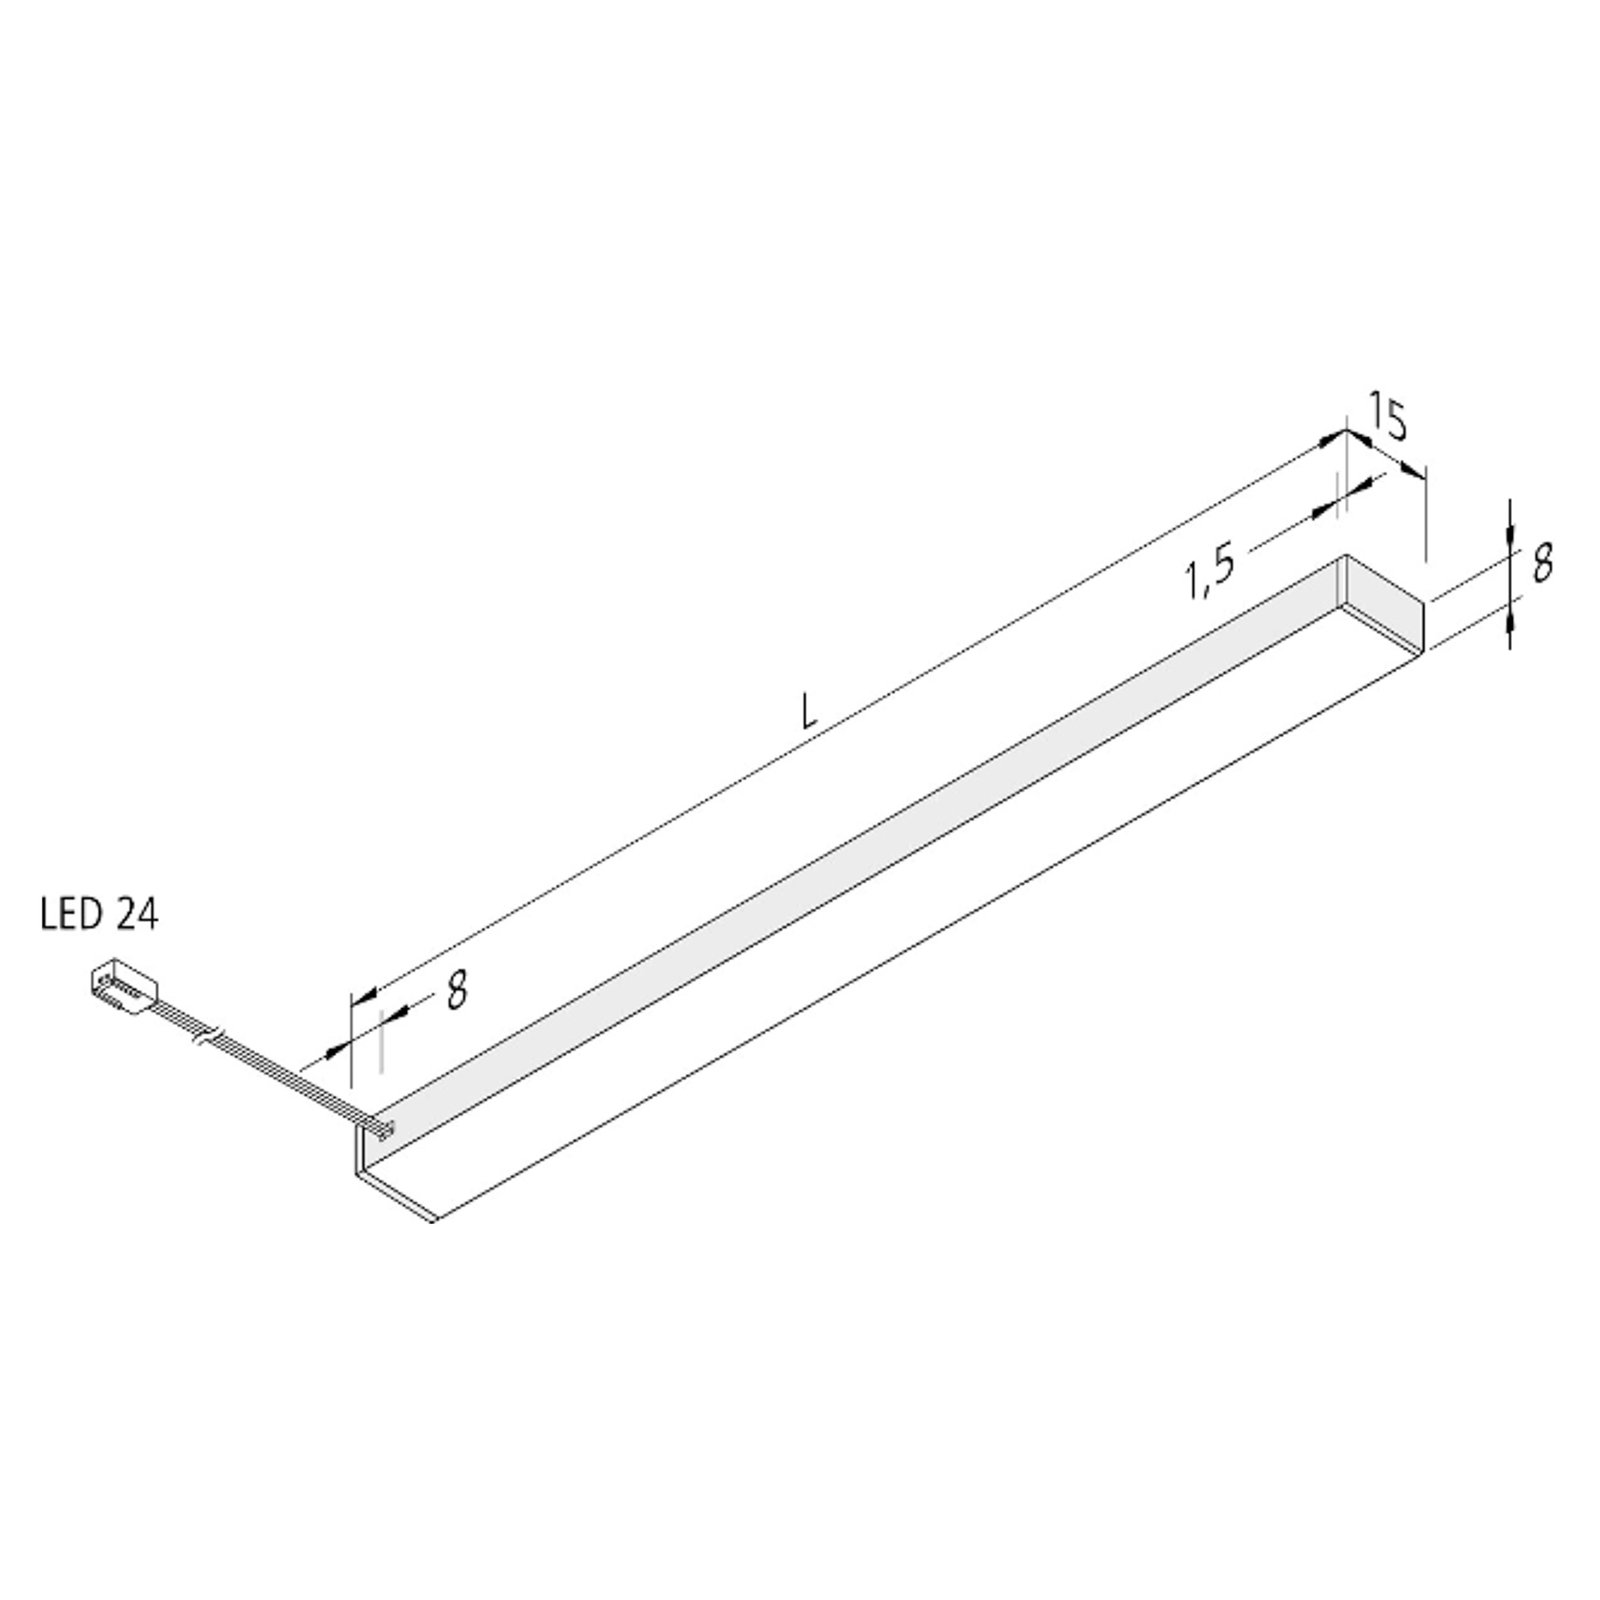 LED under-cabinet light Top-Stick FMK, 3,000K, 60cm